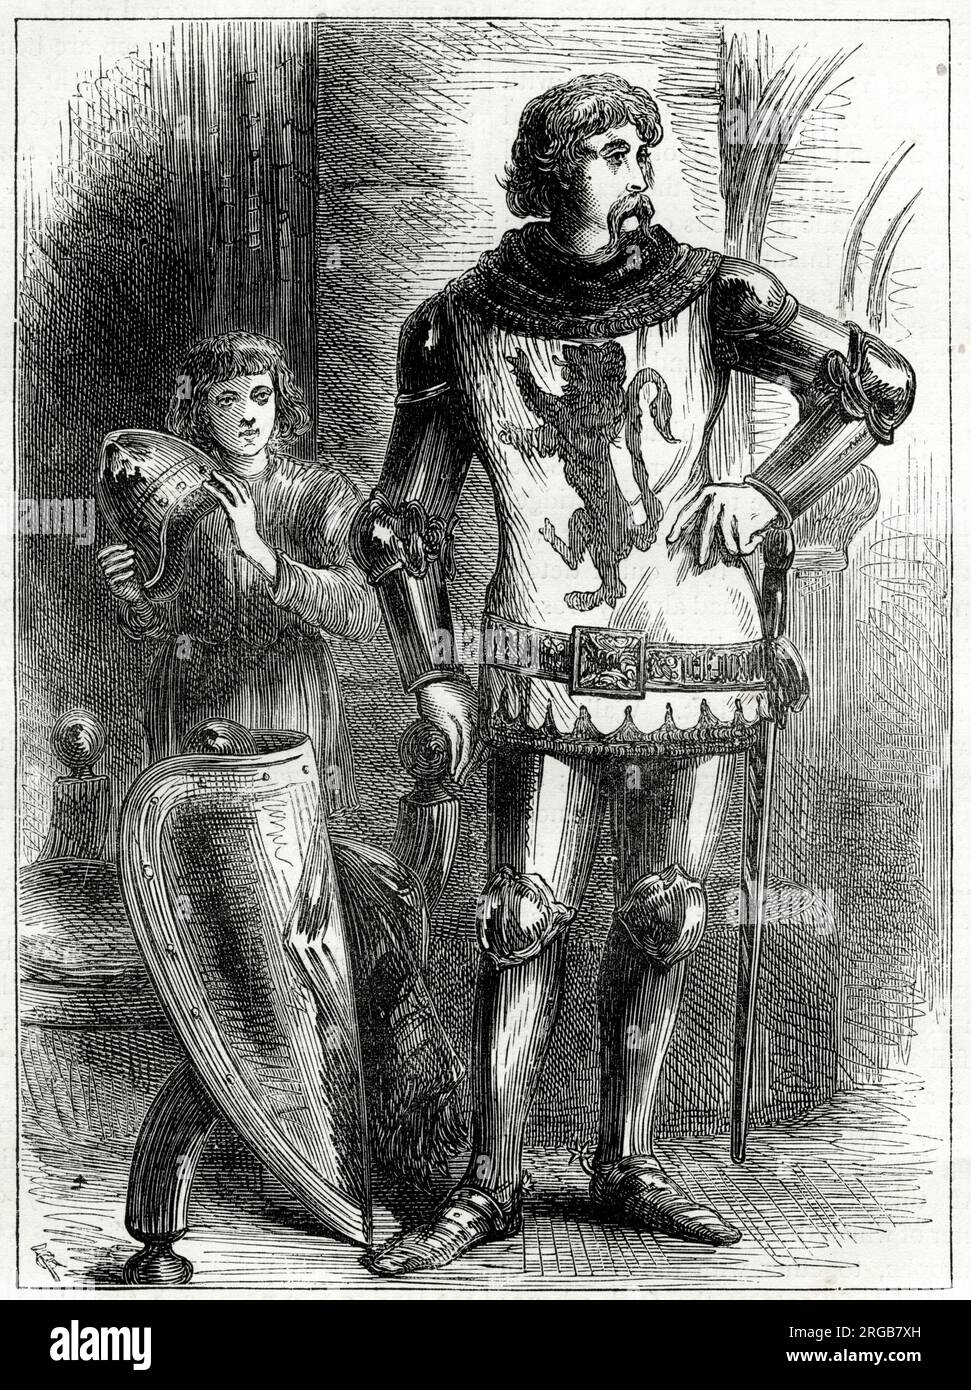 Sir William Wallace, chevalier écossais, l'un des principaux dirigeants de la première Guerre d'indépendance écossaise. Banque D'Images